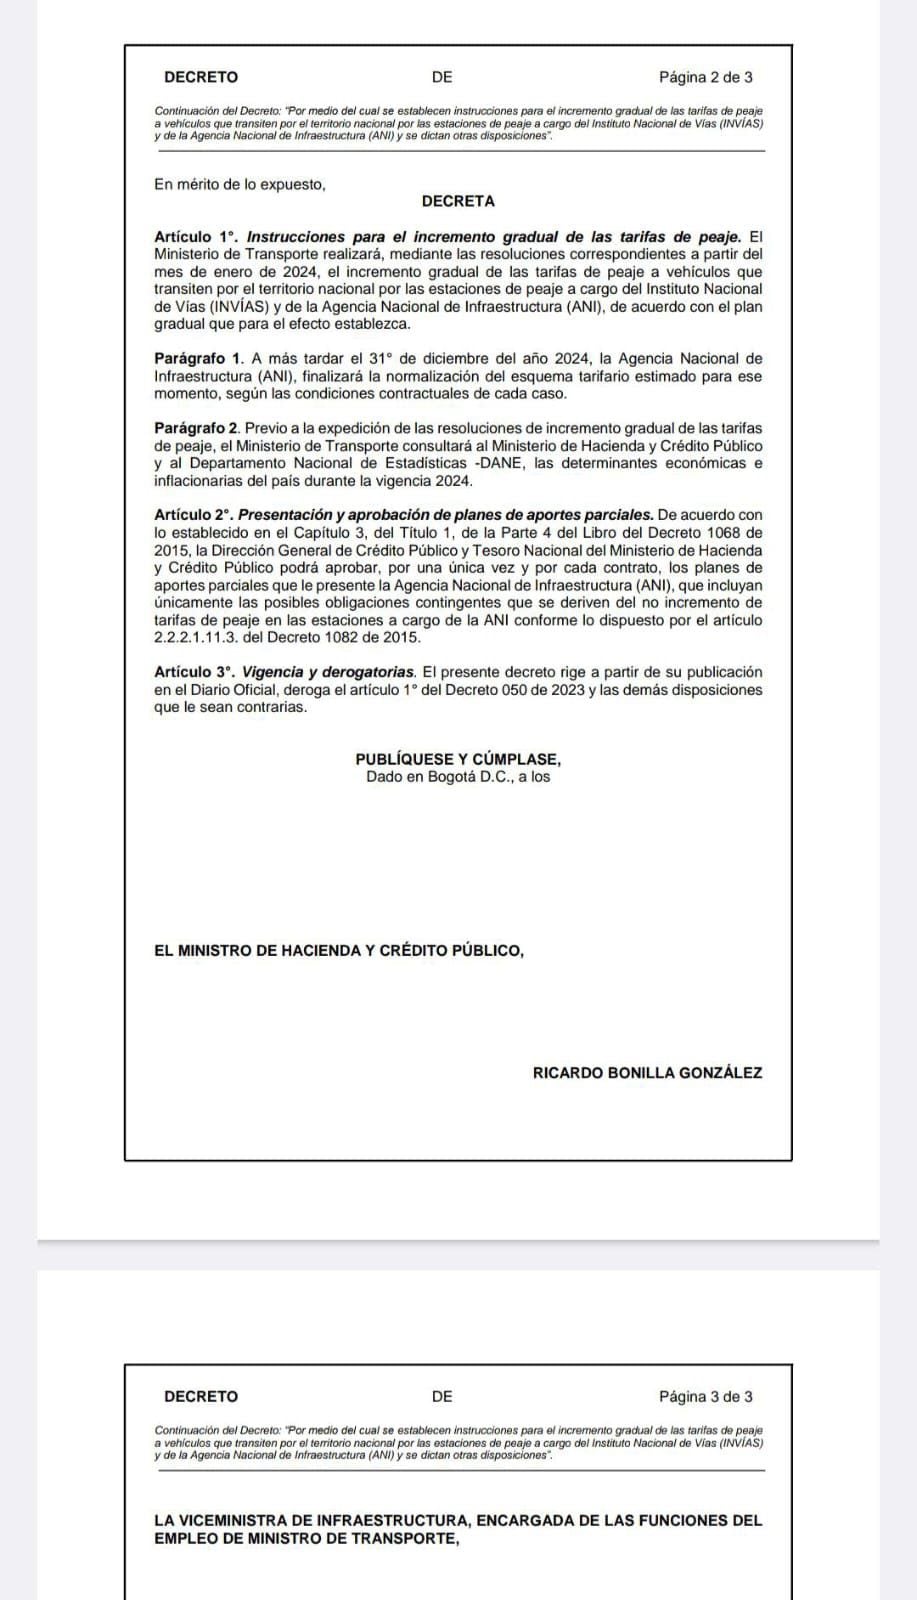 Este es el documento borrador del decreto de aumento en las tarifas de peajes, dado a conocer por el Gobierno a inicios del presente mes.